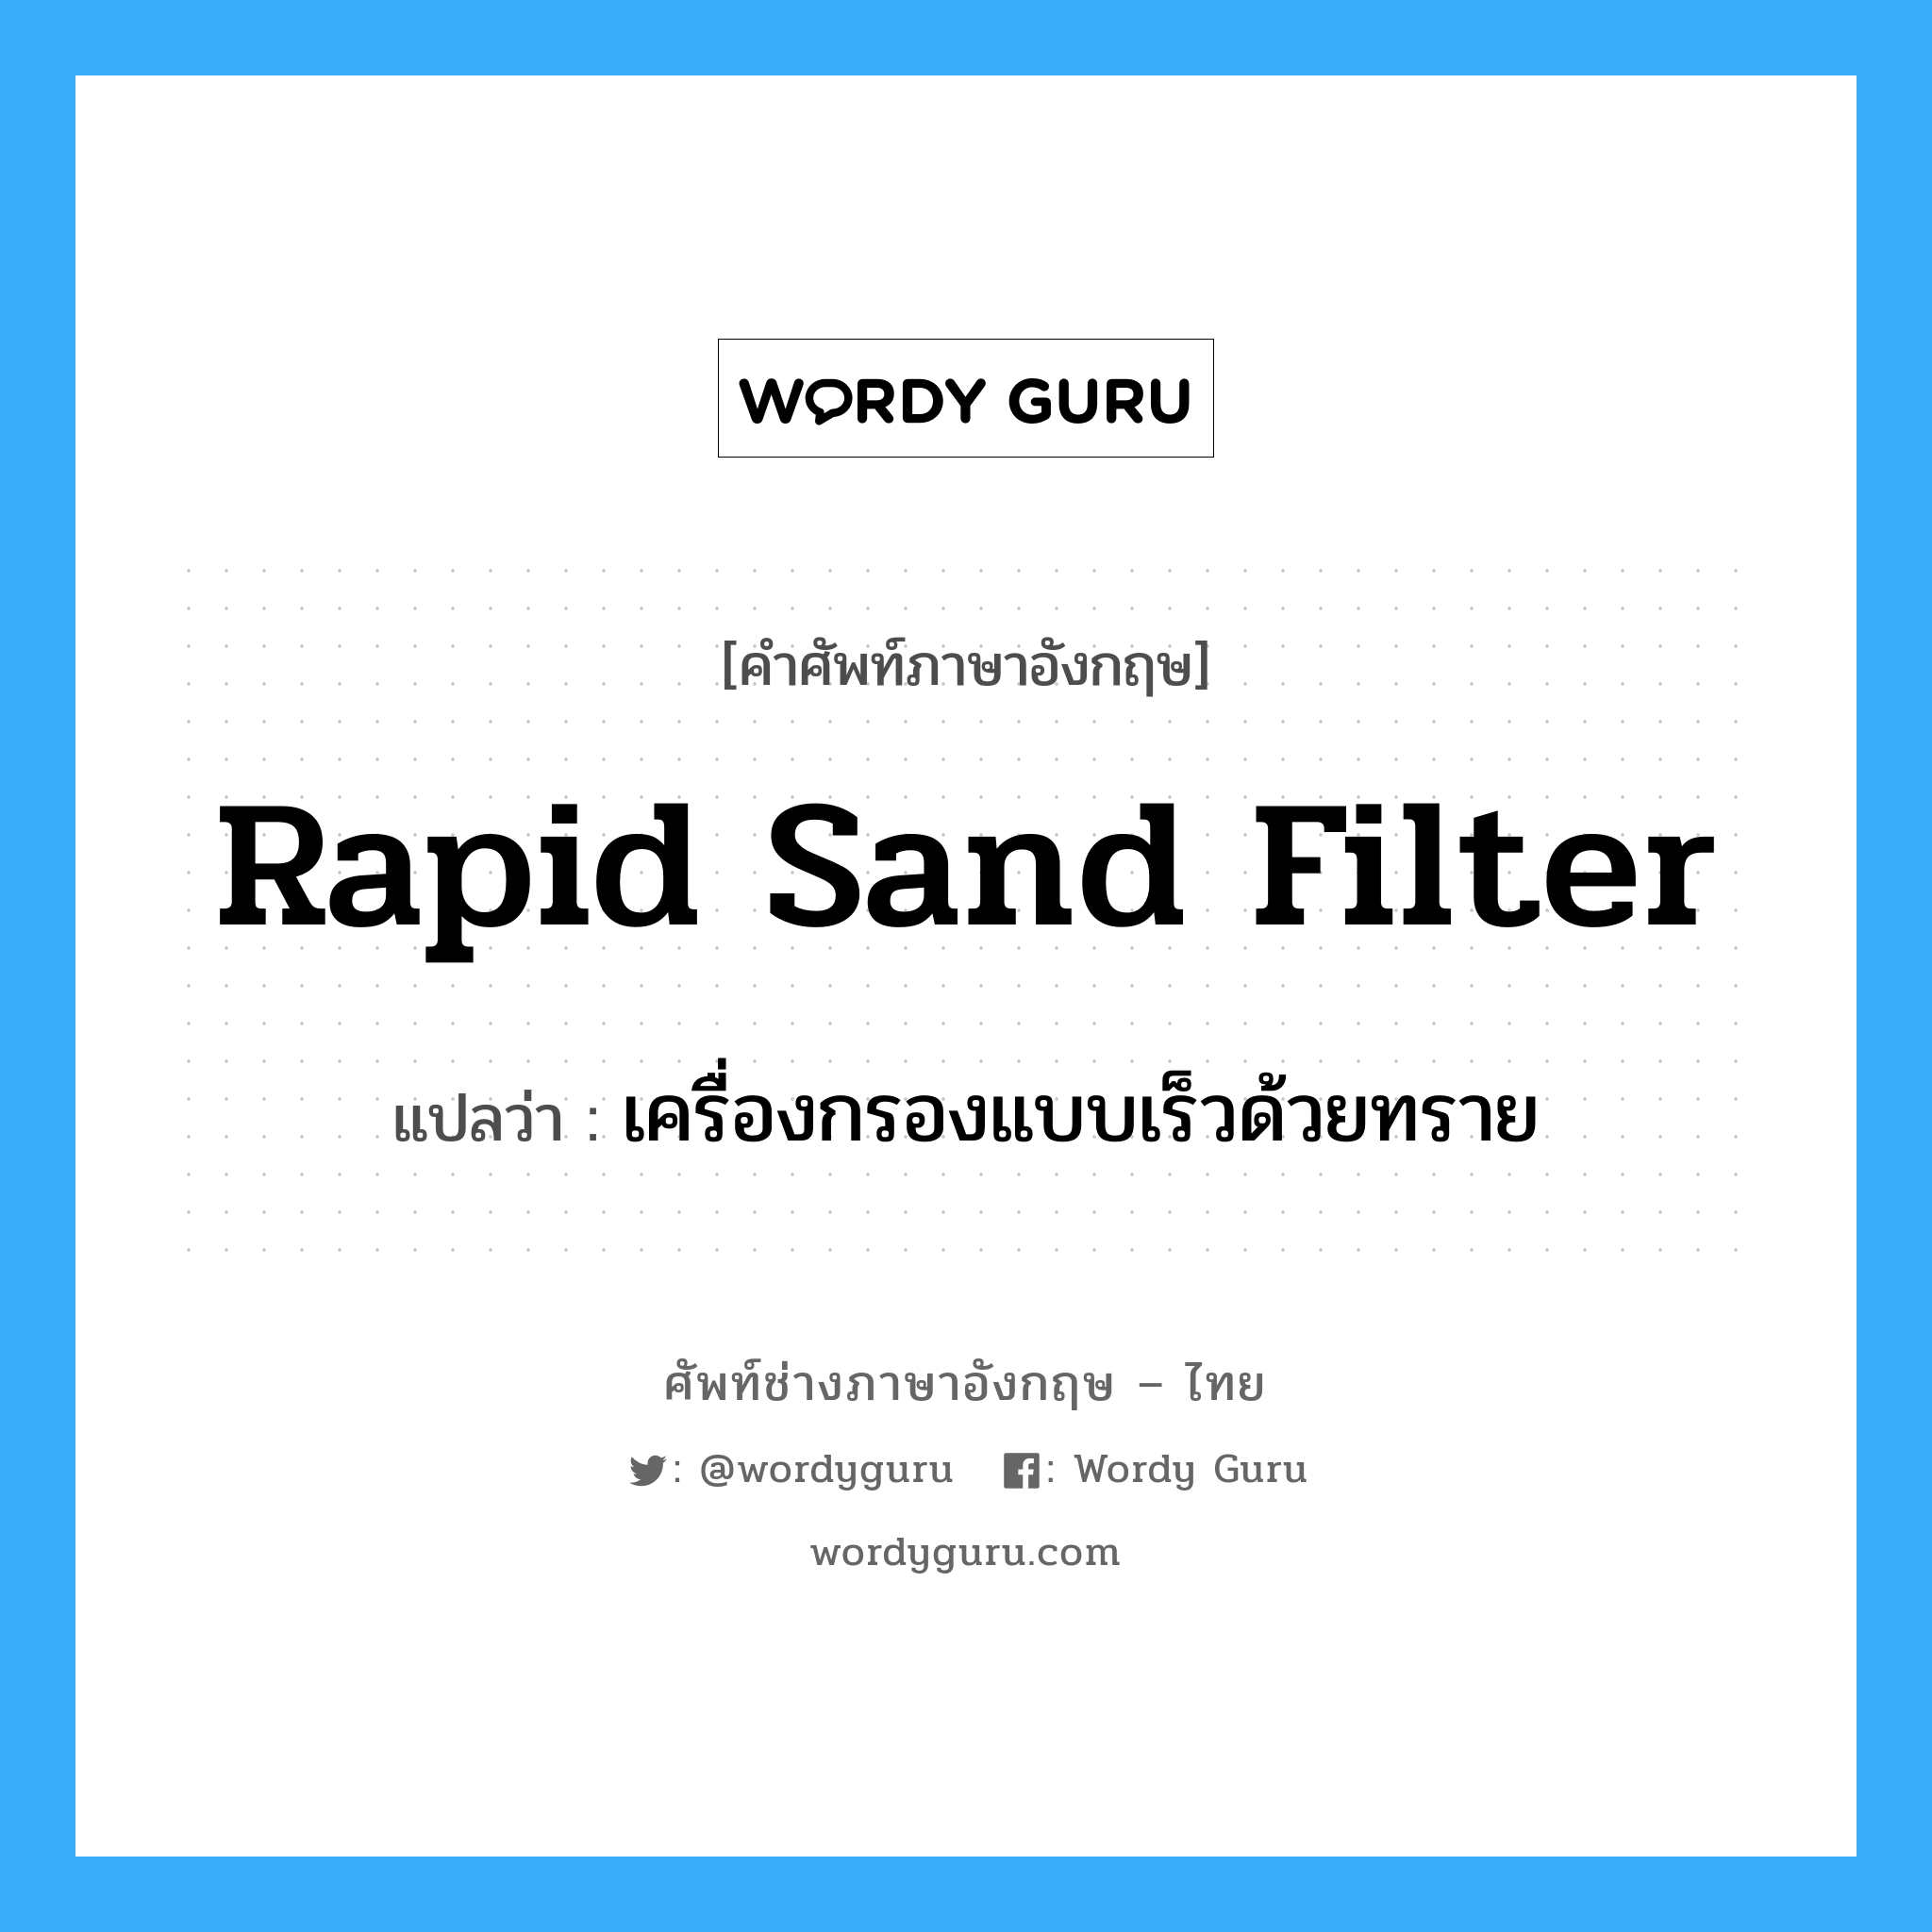 เครื่องกรองแบบเร็วด้วยทราย ภาษาอังกฤษ?, คำศัพท์ช่างภาษาอังกฤษ - ไทย เครื่องกรองแบบเร็วด้วยทราย คำศัพท์ภาษาอังกฤษ เครื่องกรองแบบเร็วด้วยทราย แปลว่า rapid sand filter